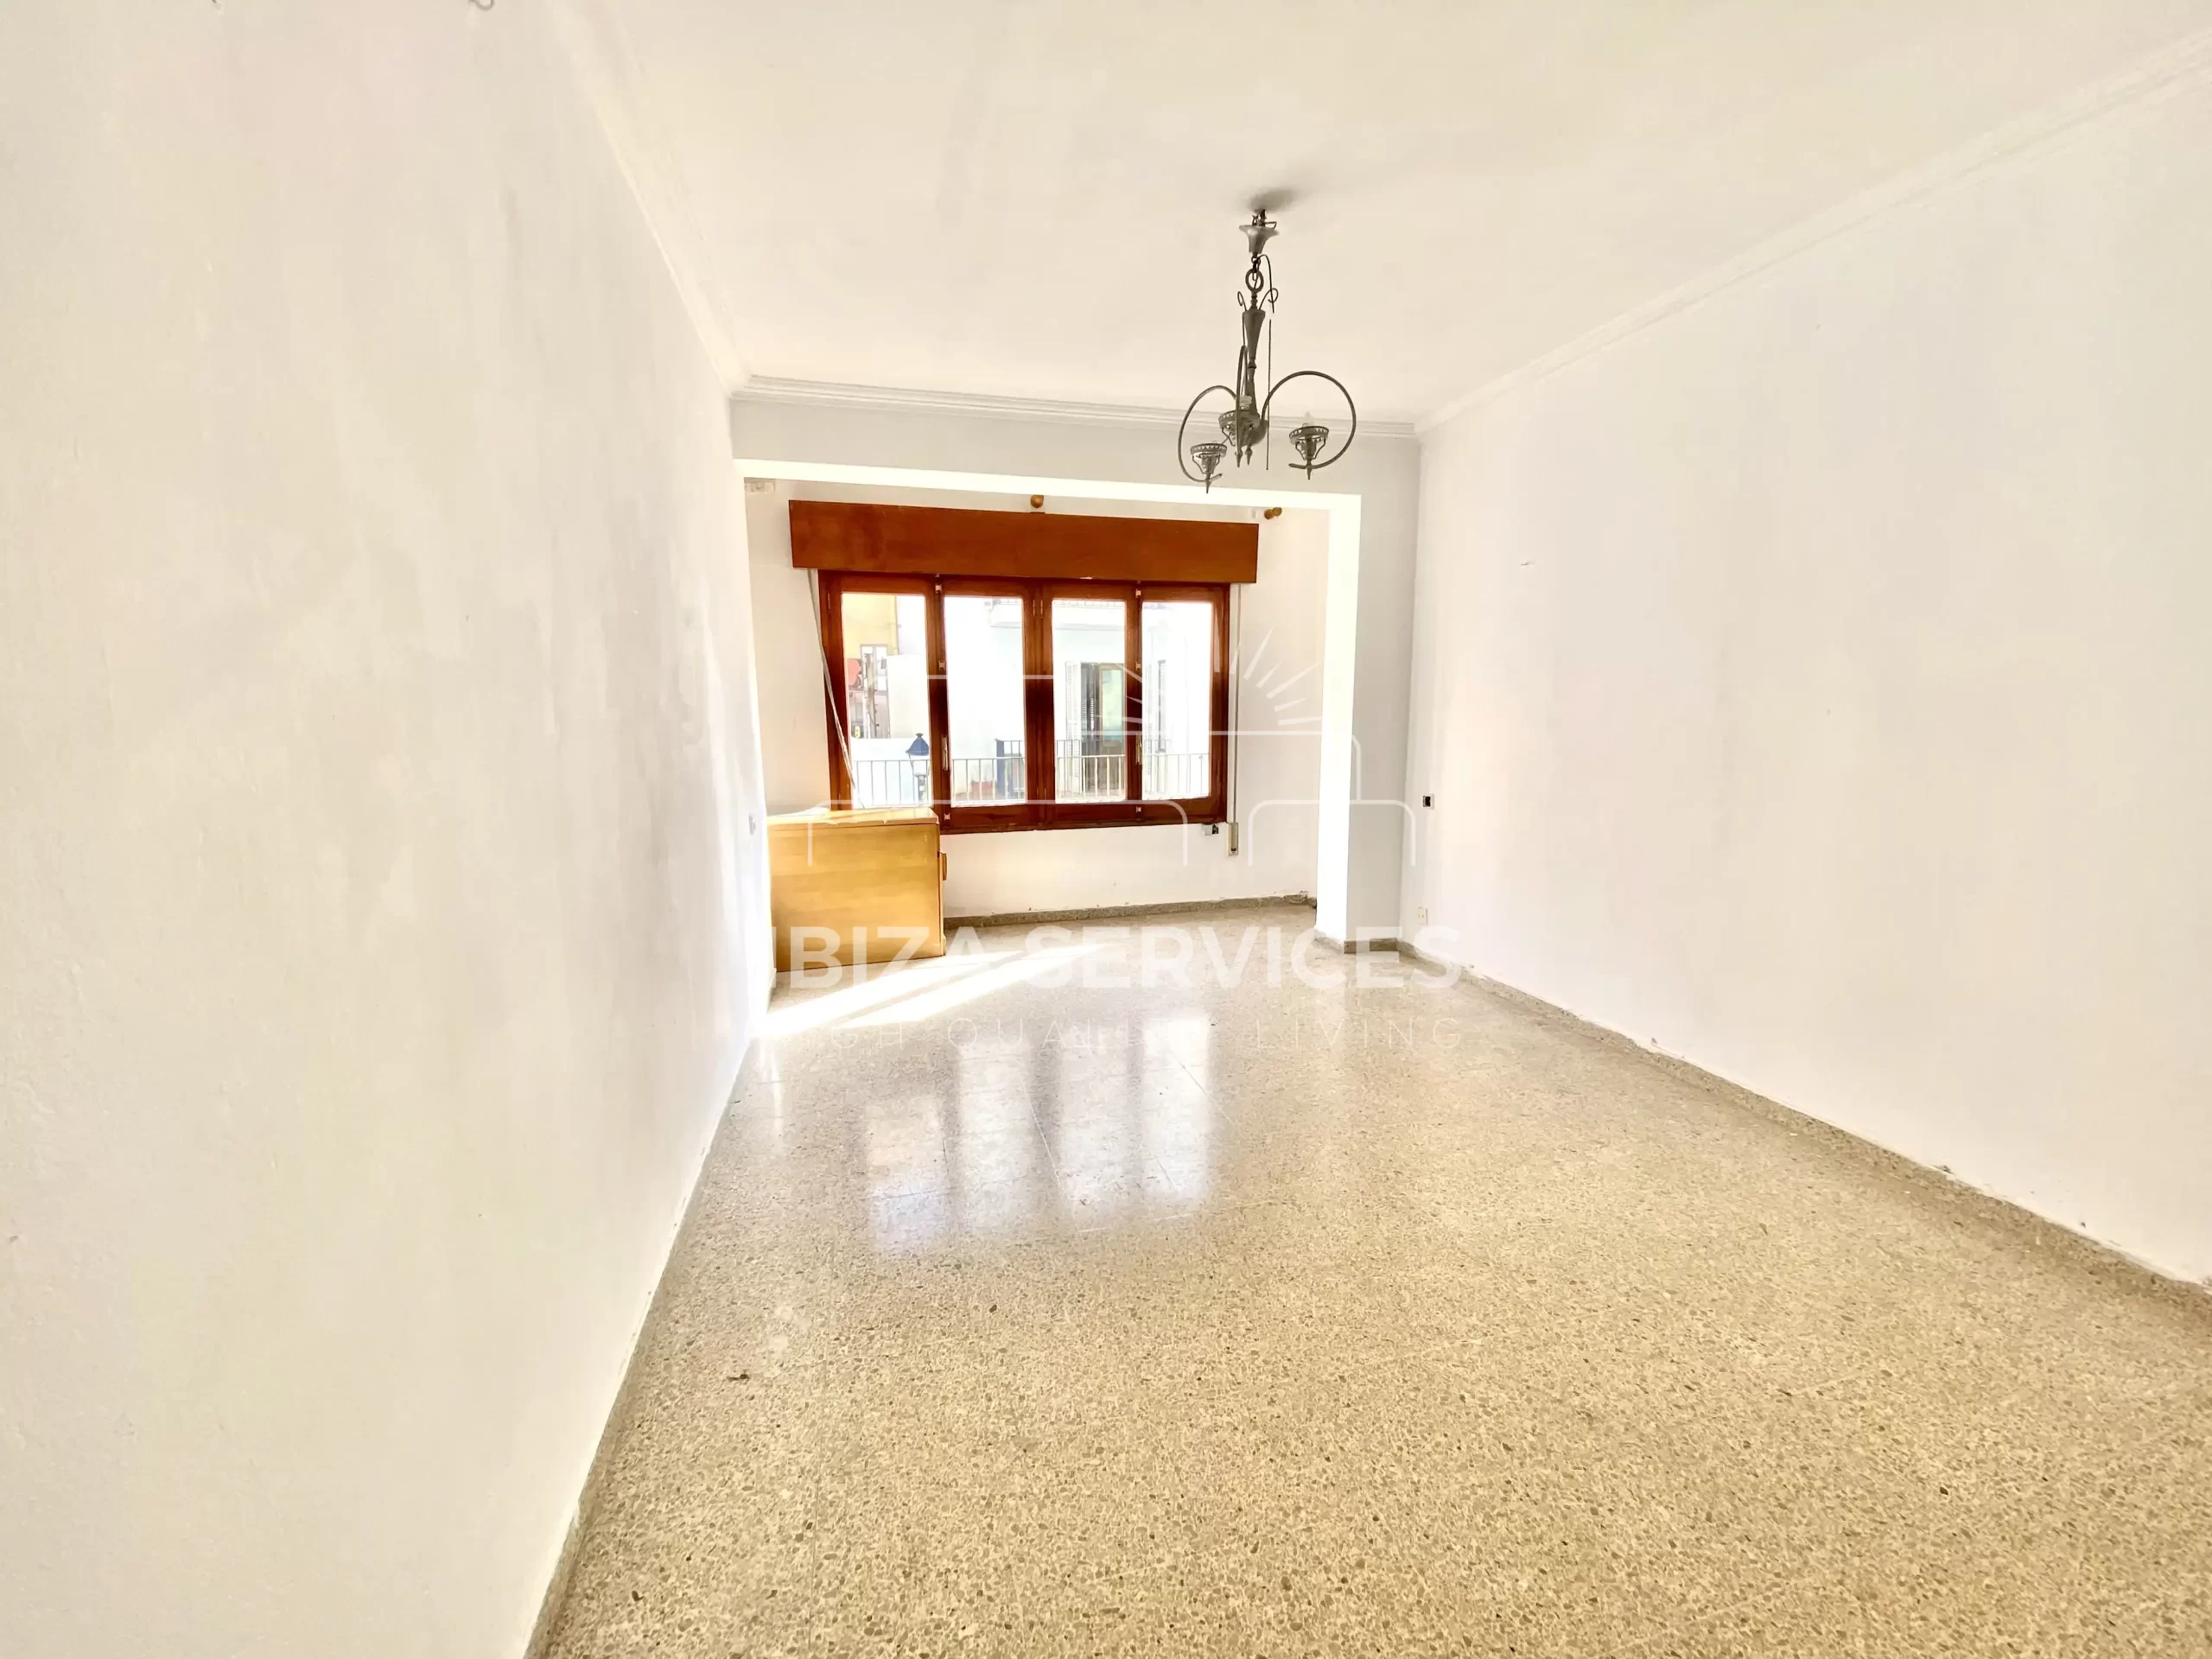 En vente appartement de 3 chambres à rénover à Ibiza ville